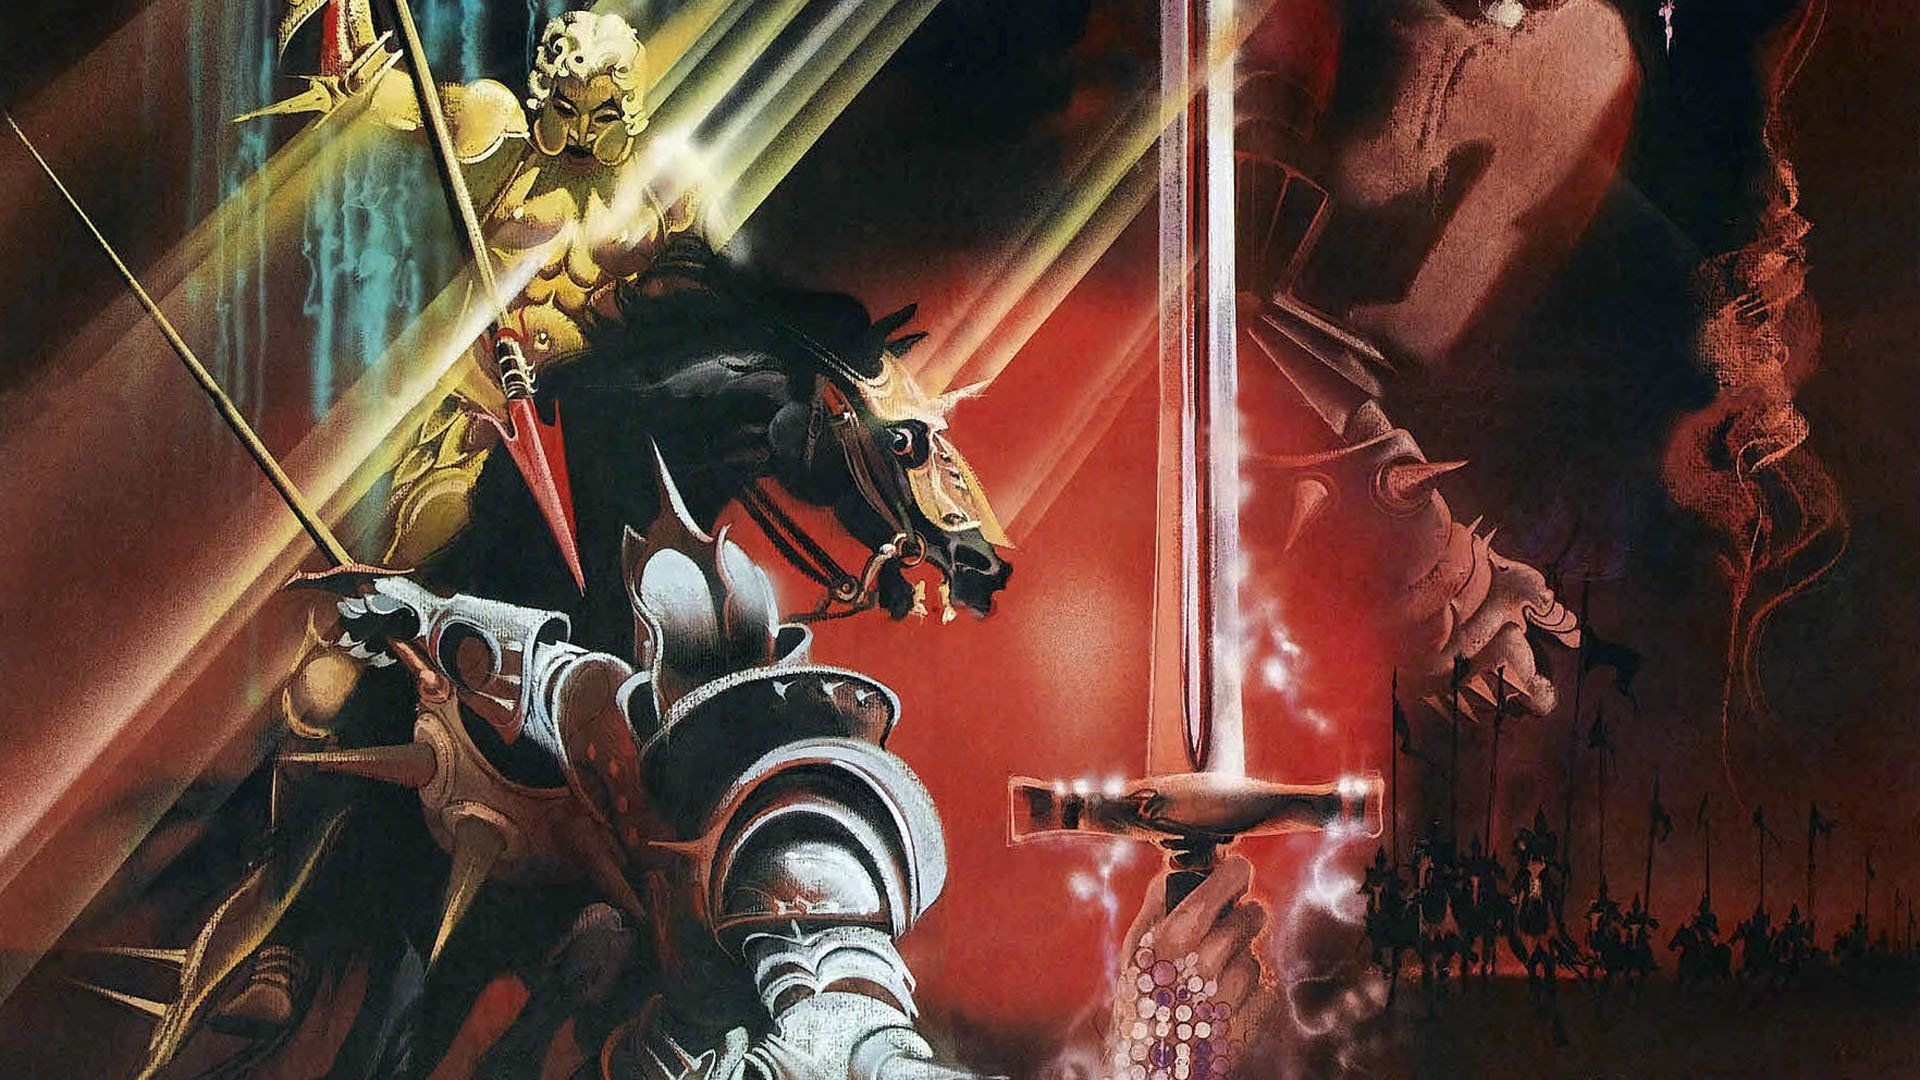 Excalibur - Excalibur 1981 , HD Wallpaper & Backgrounds